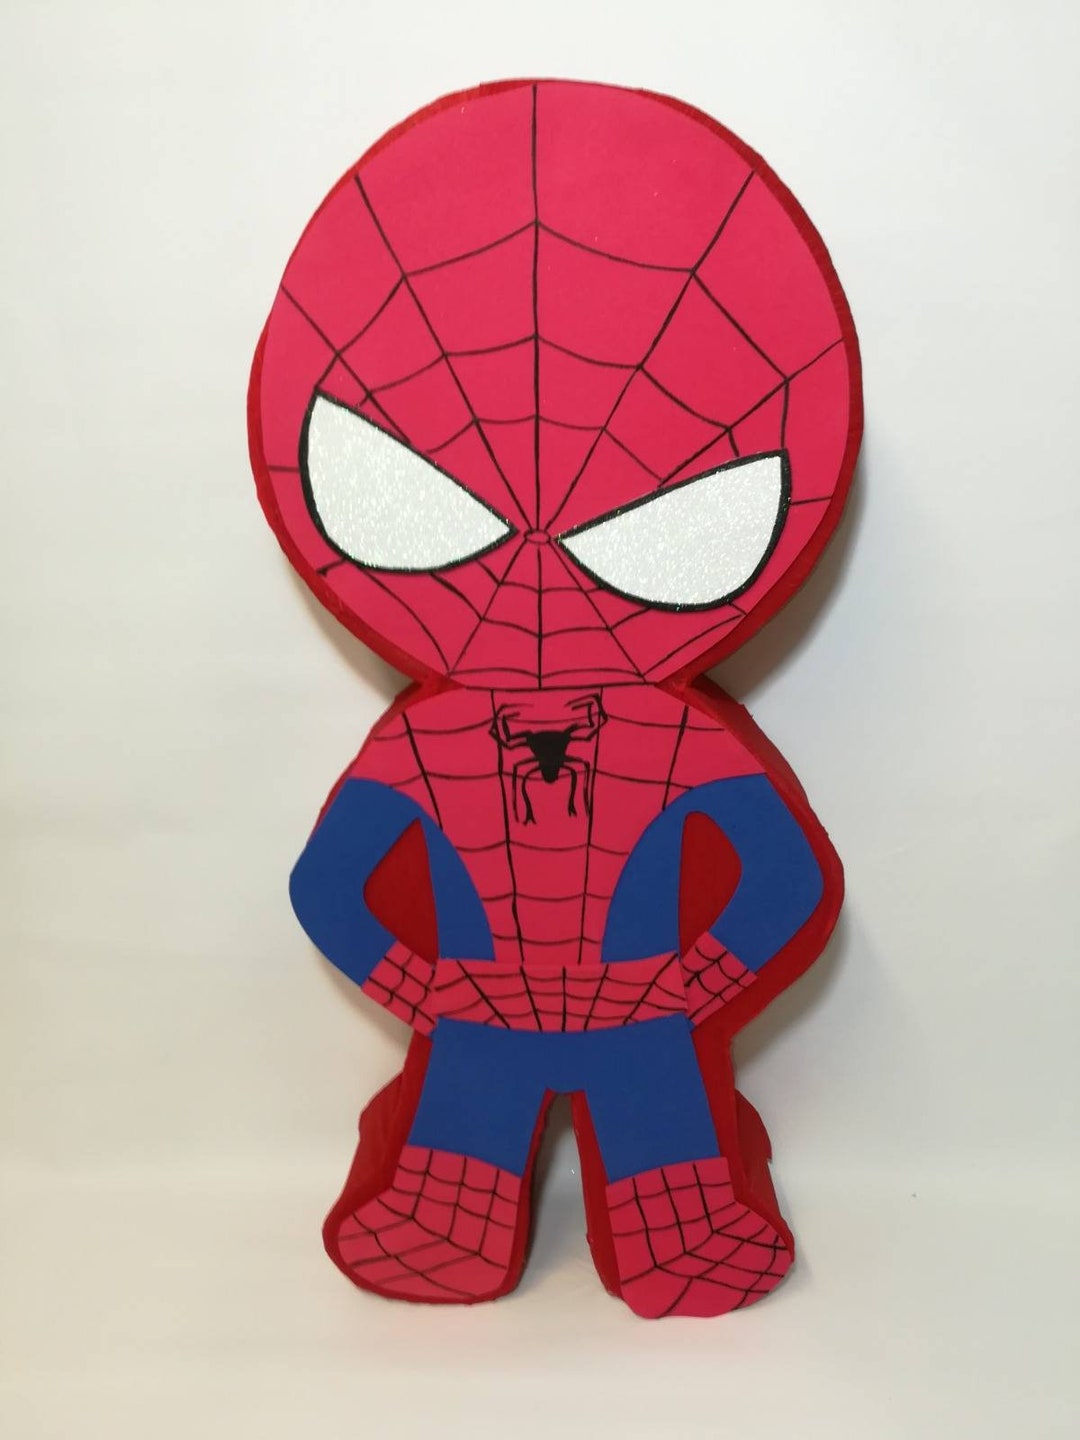 Piñata Spiderman 80cm #piñatas #piñateros #piñataspersonalizadas #como